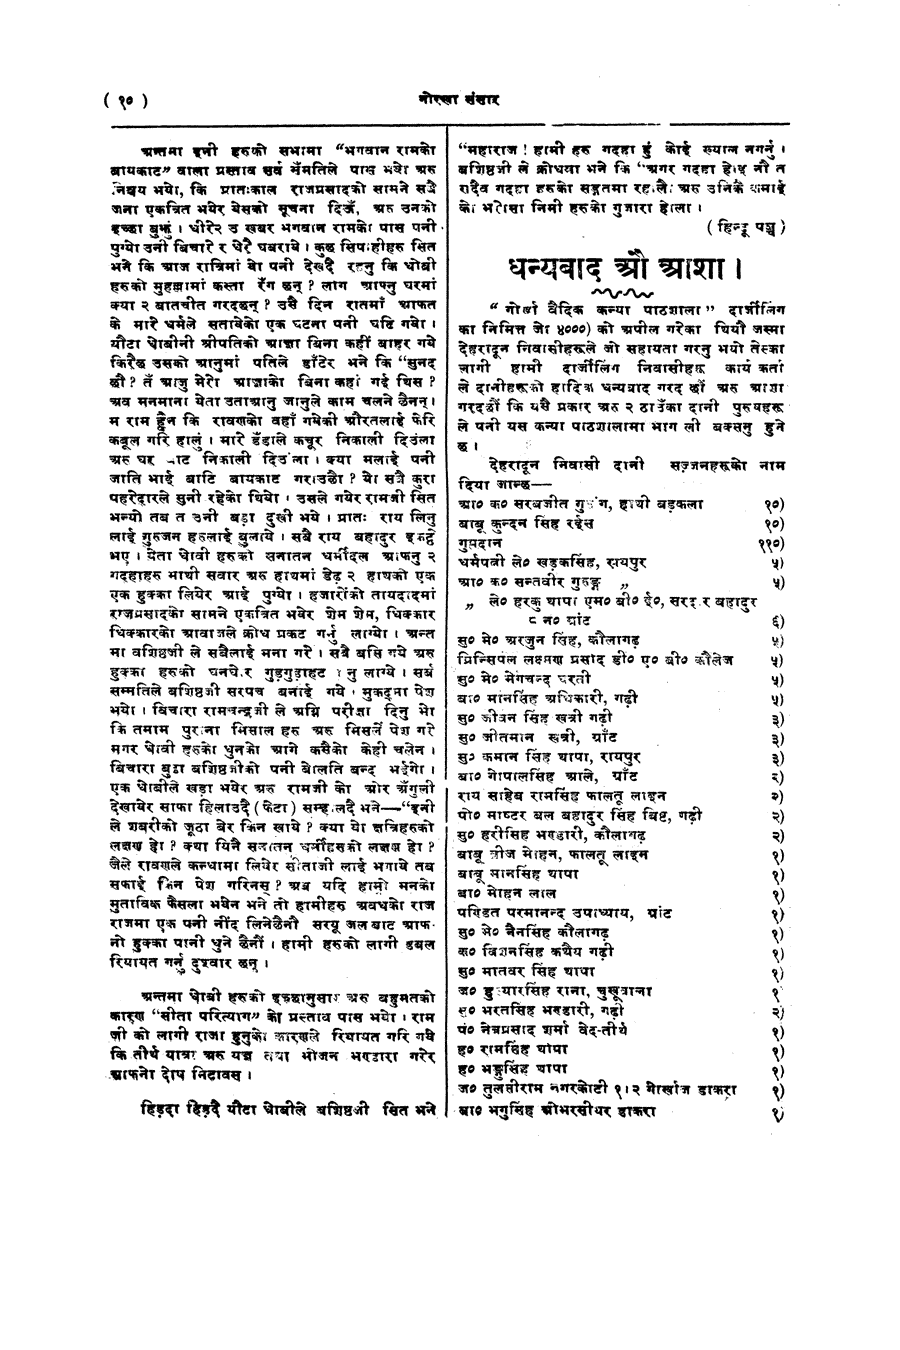 Gorkha Sansar, 28 Feb 1928, page 10